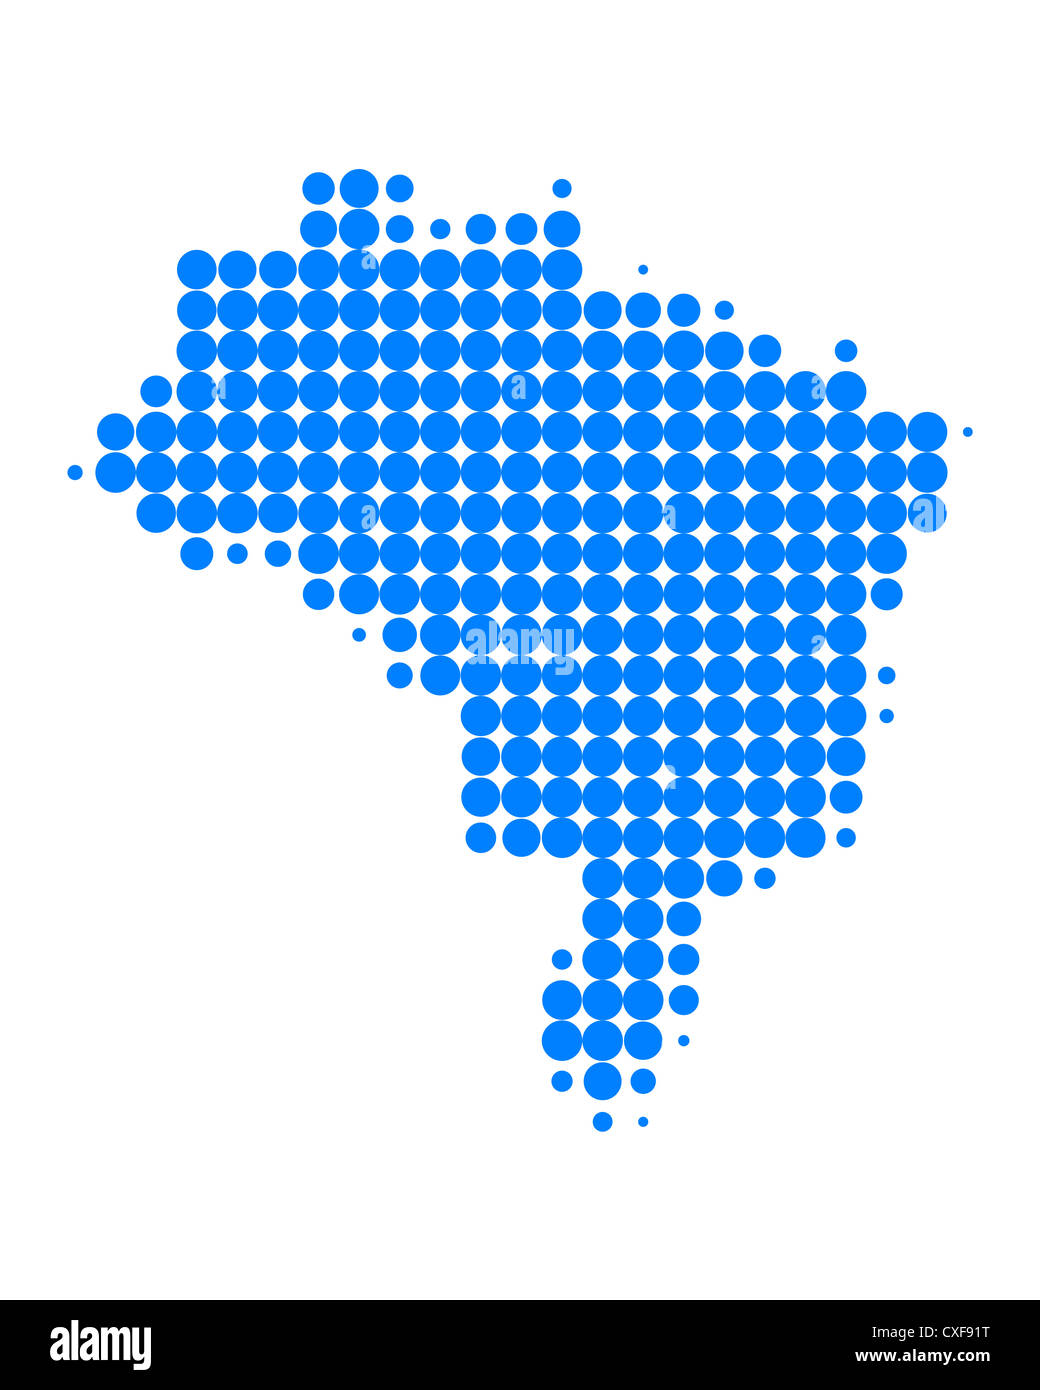 Karte von Brasilien Stockfoto